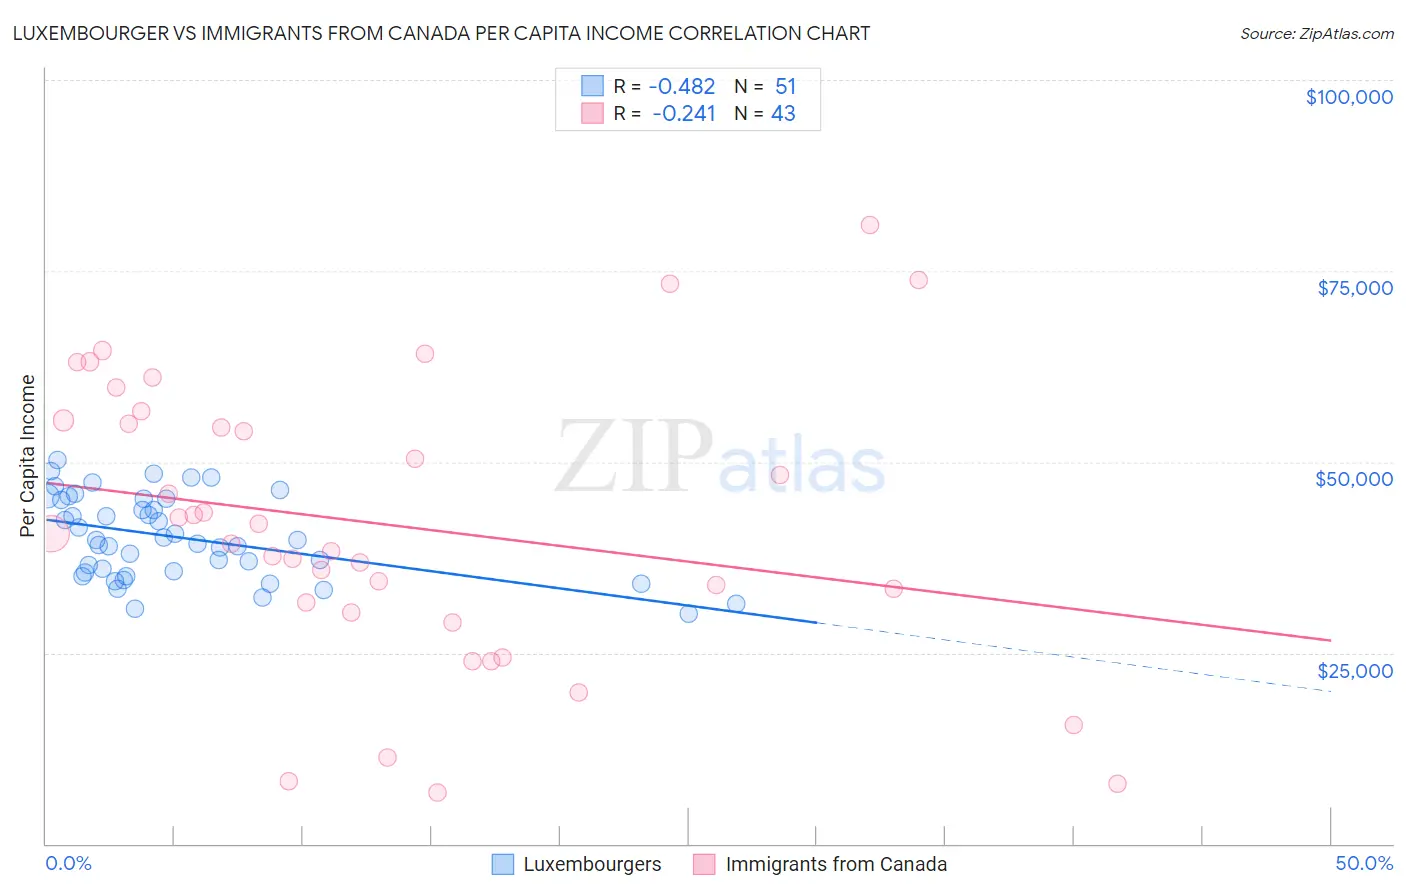 Luxembourger vs Immigrants from Canada Per Capita Income